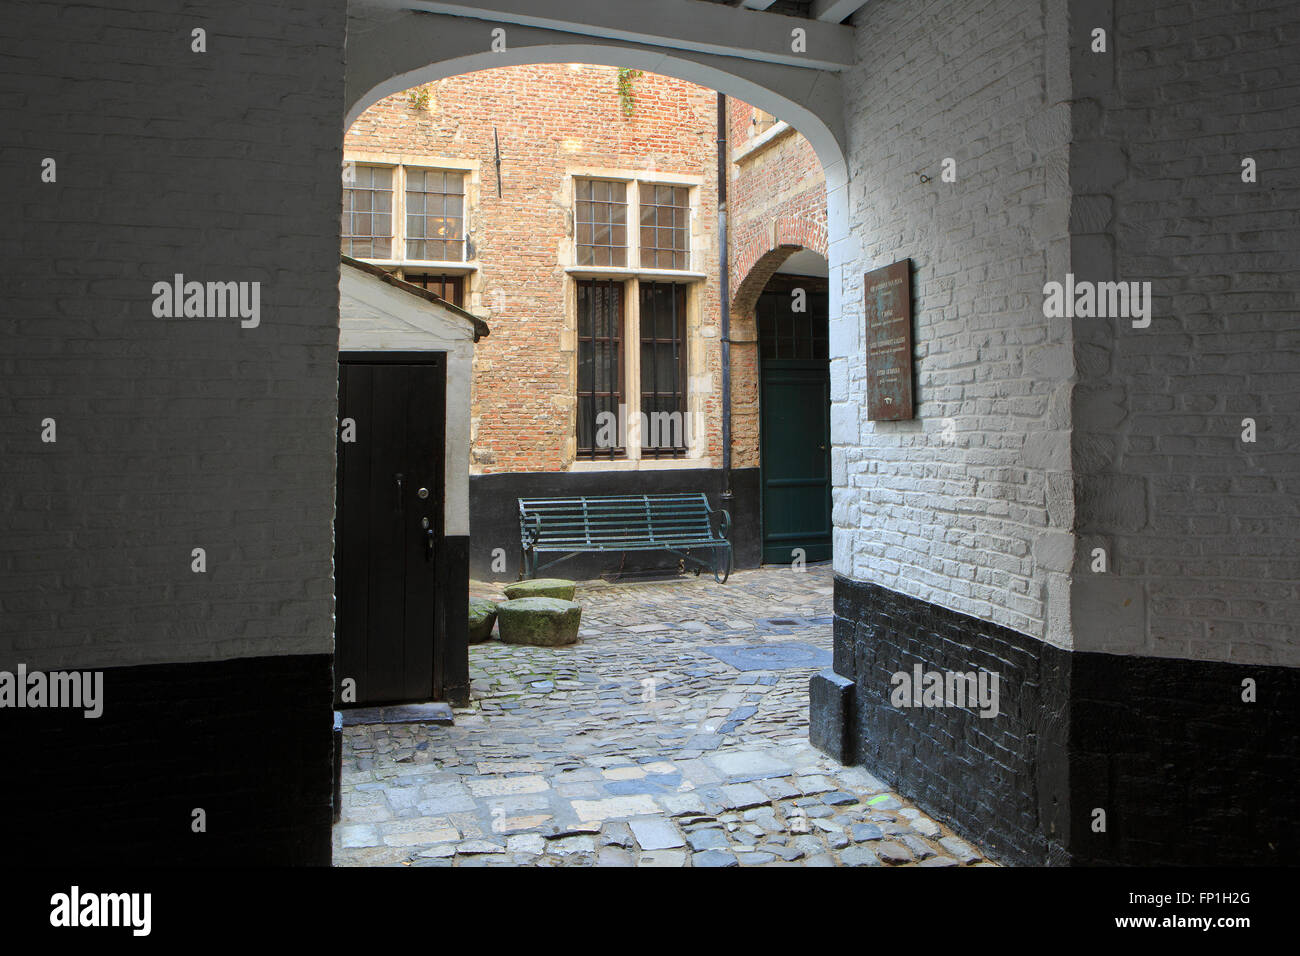 The medieval alley named 'Vlaeykensgang' (1591) in Antwerp, Belgium Stock Photo